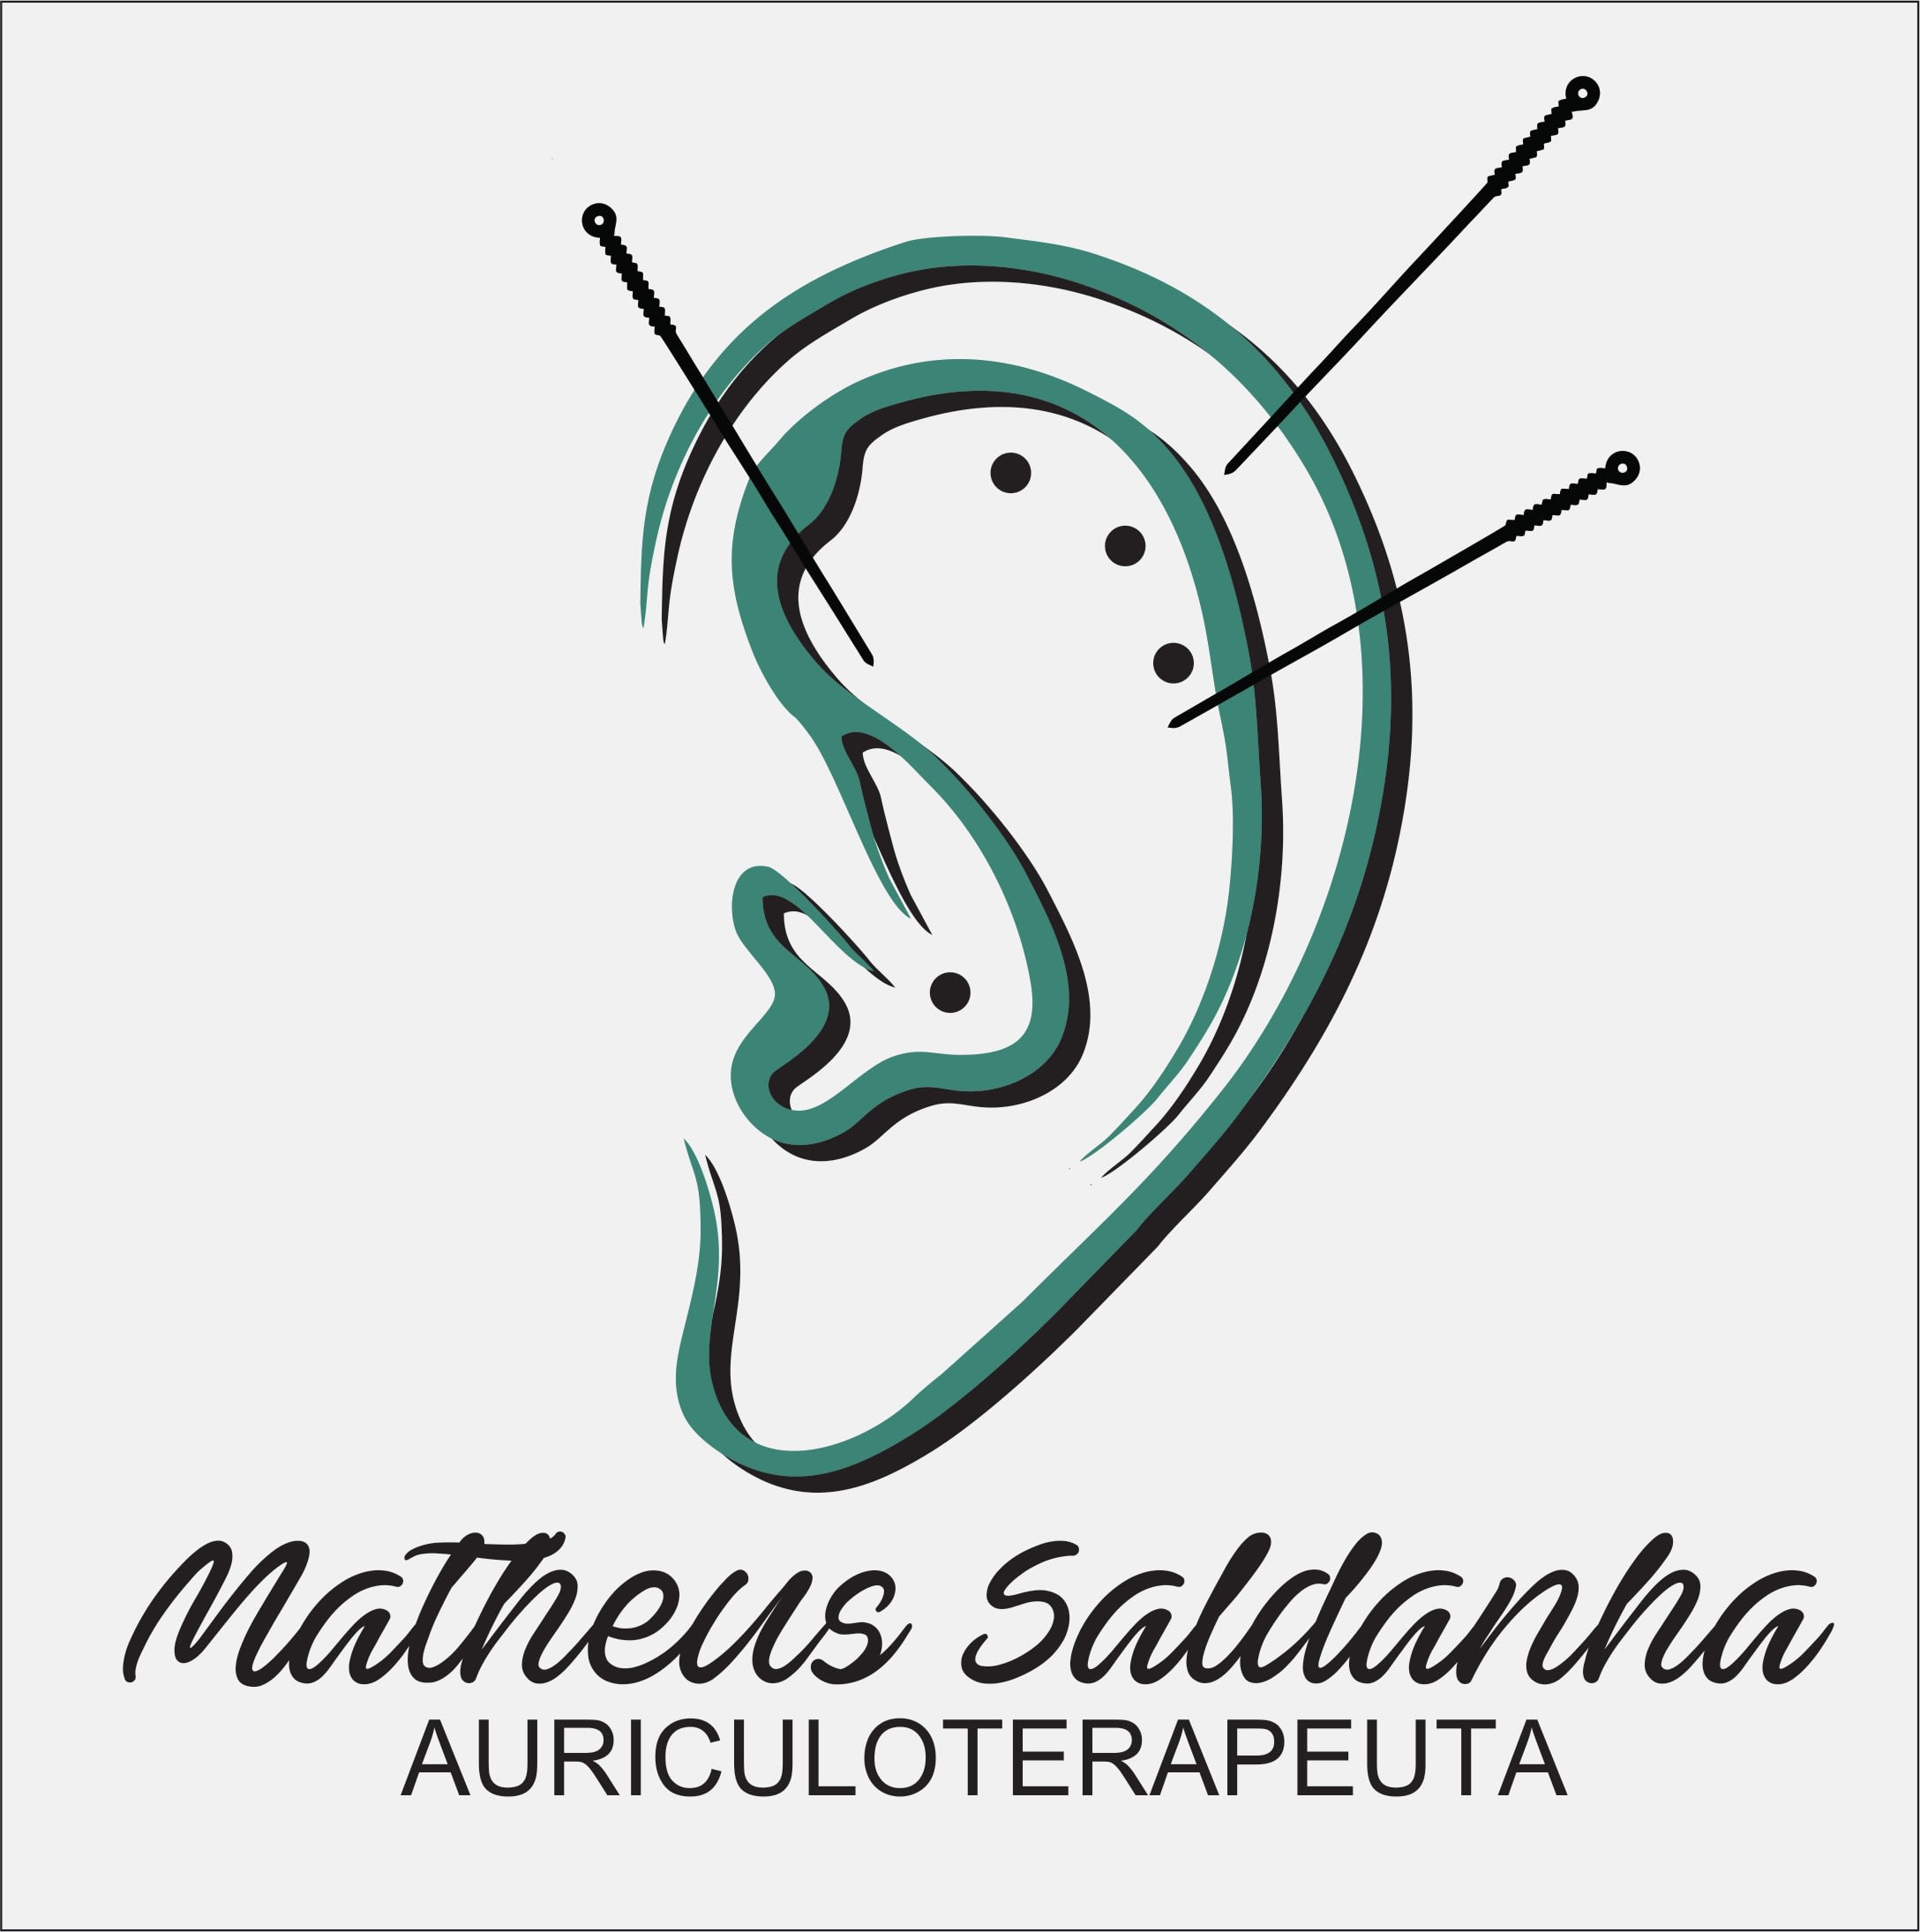 Matheus Saldanha Auriculoterapeuta